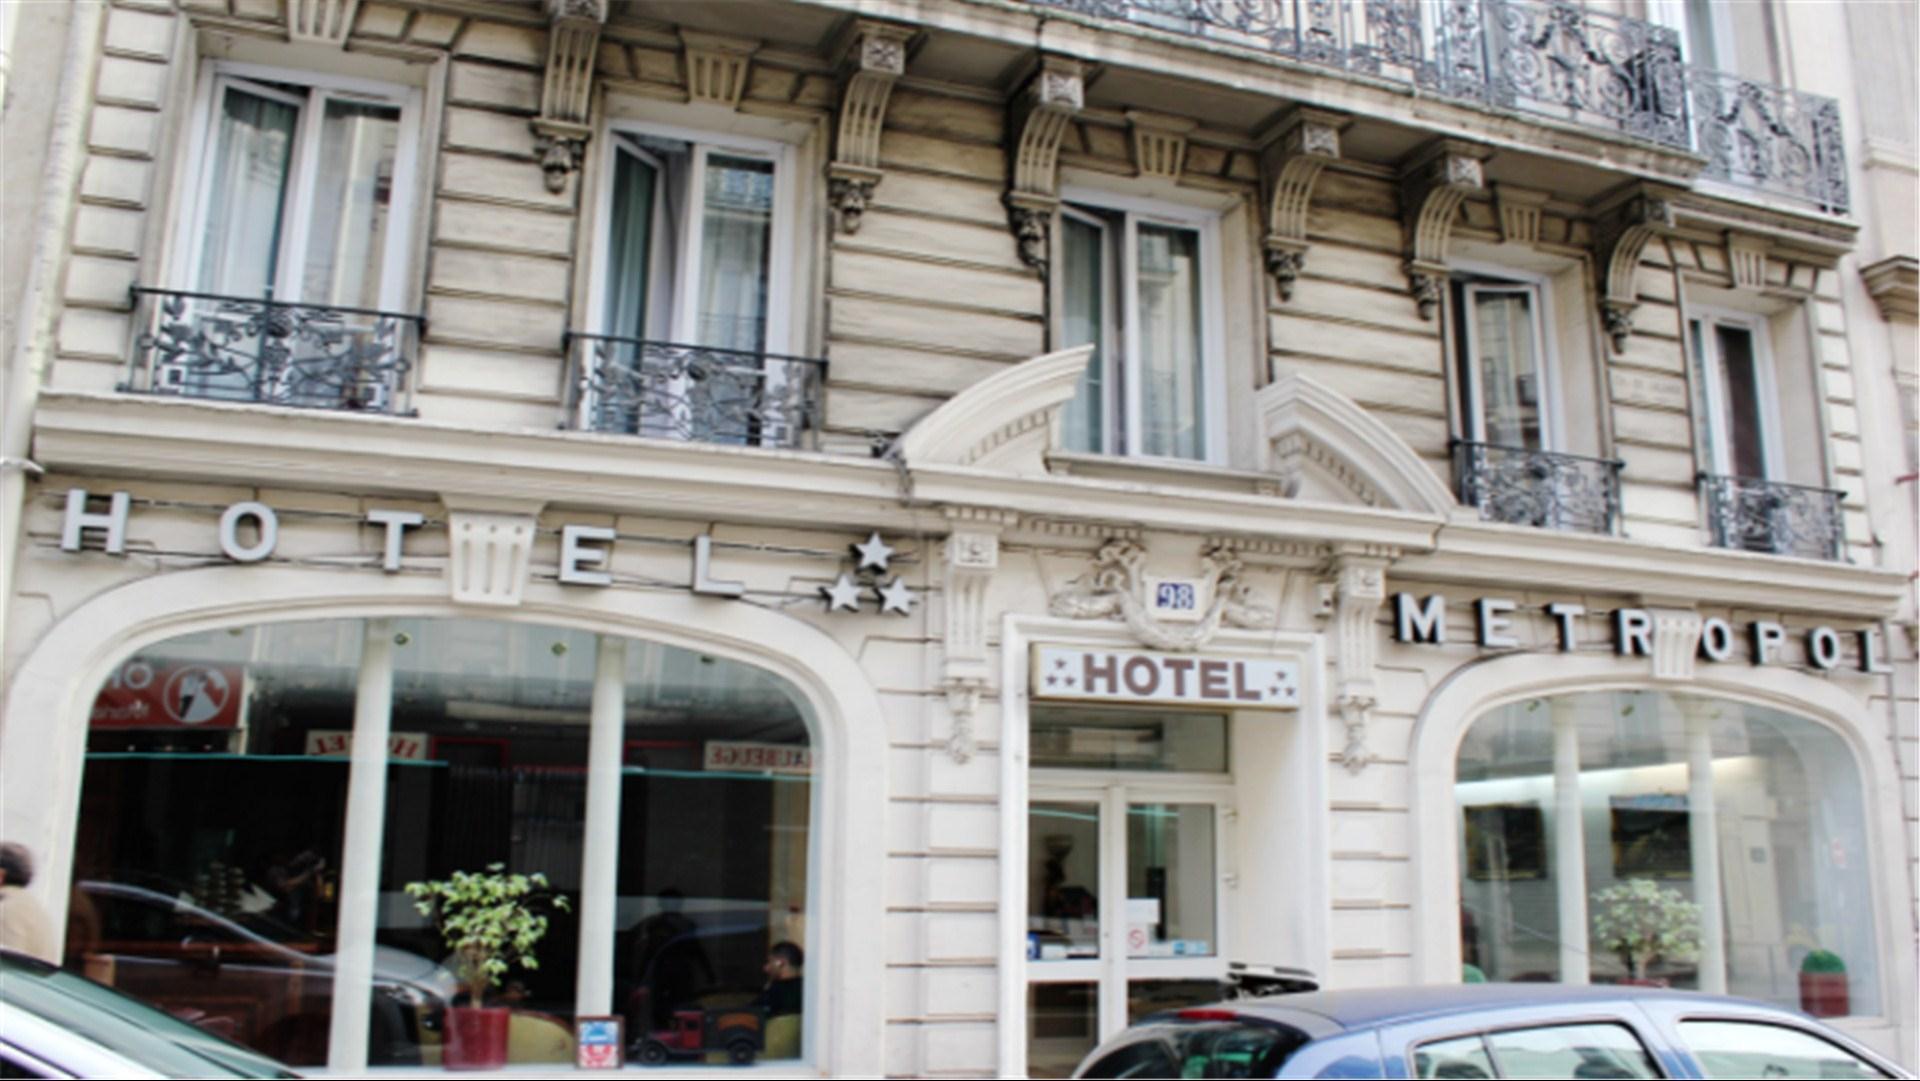 Hotel Metropol in Paris, FR